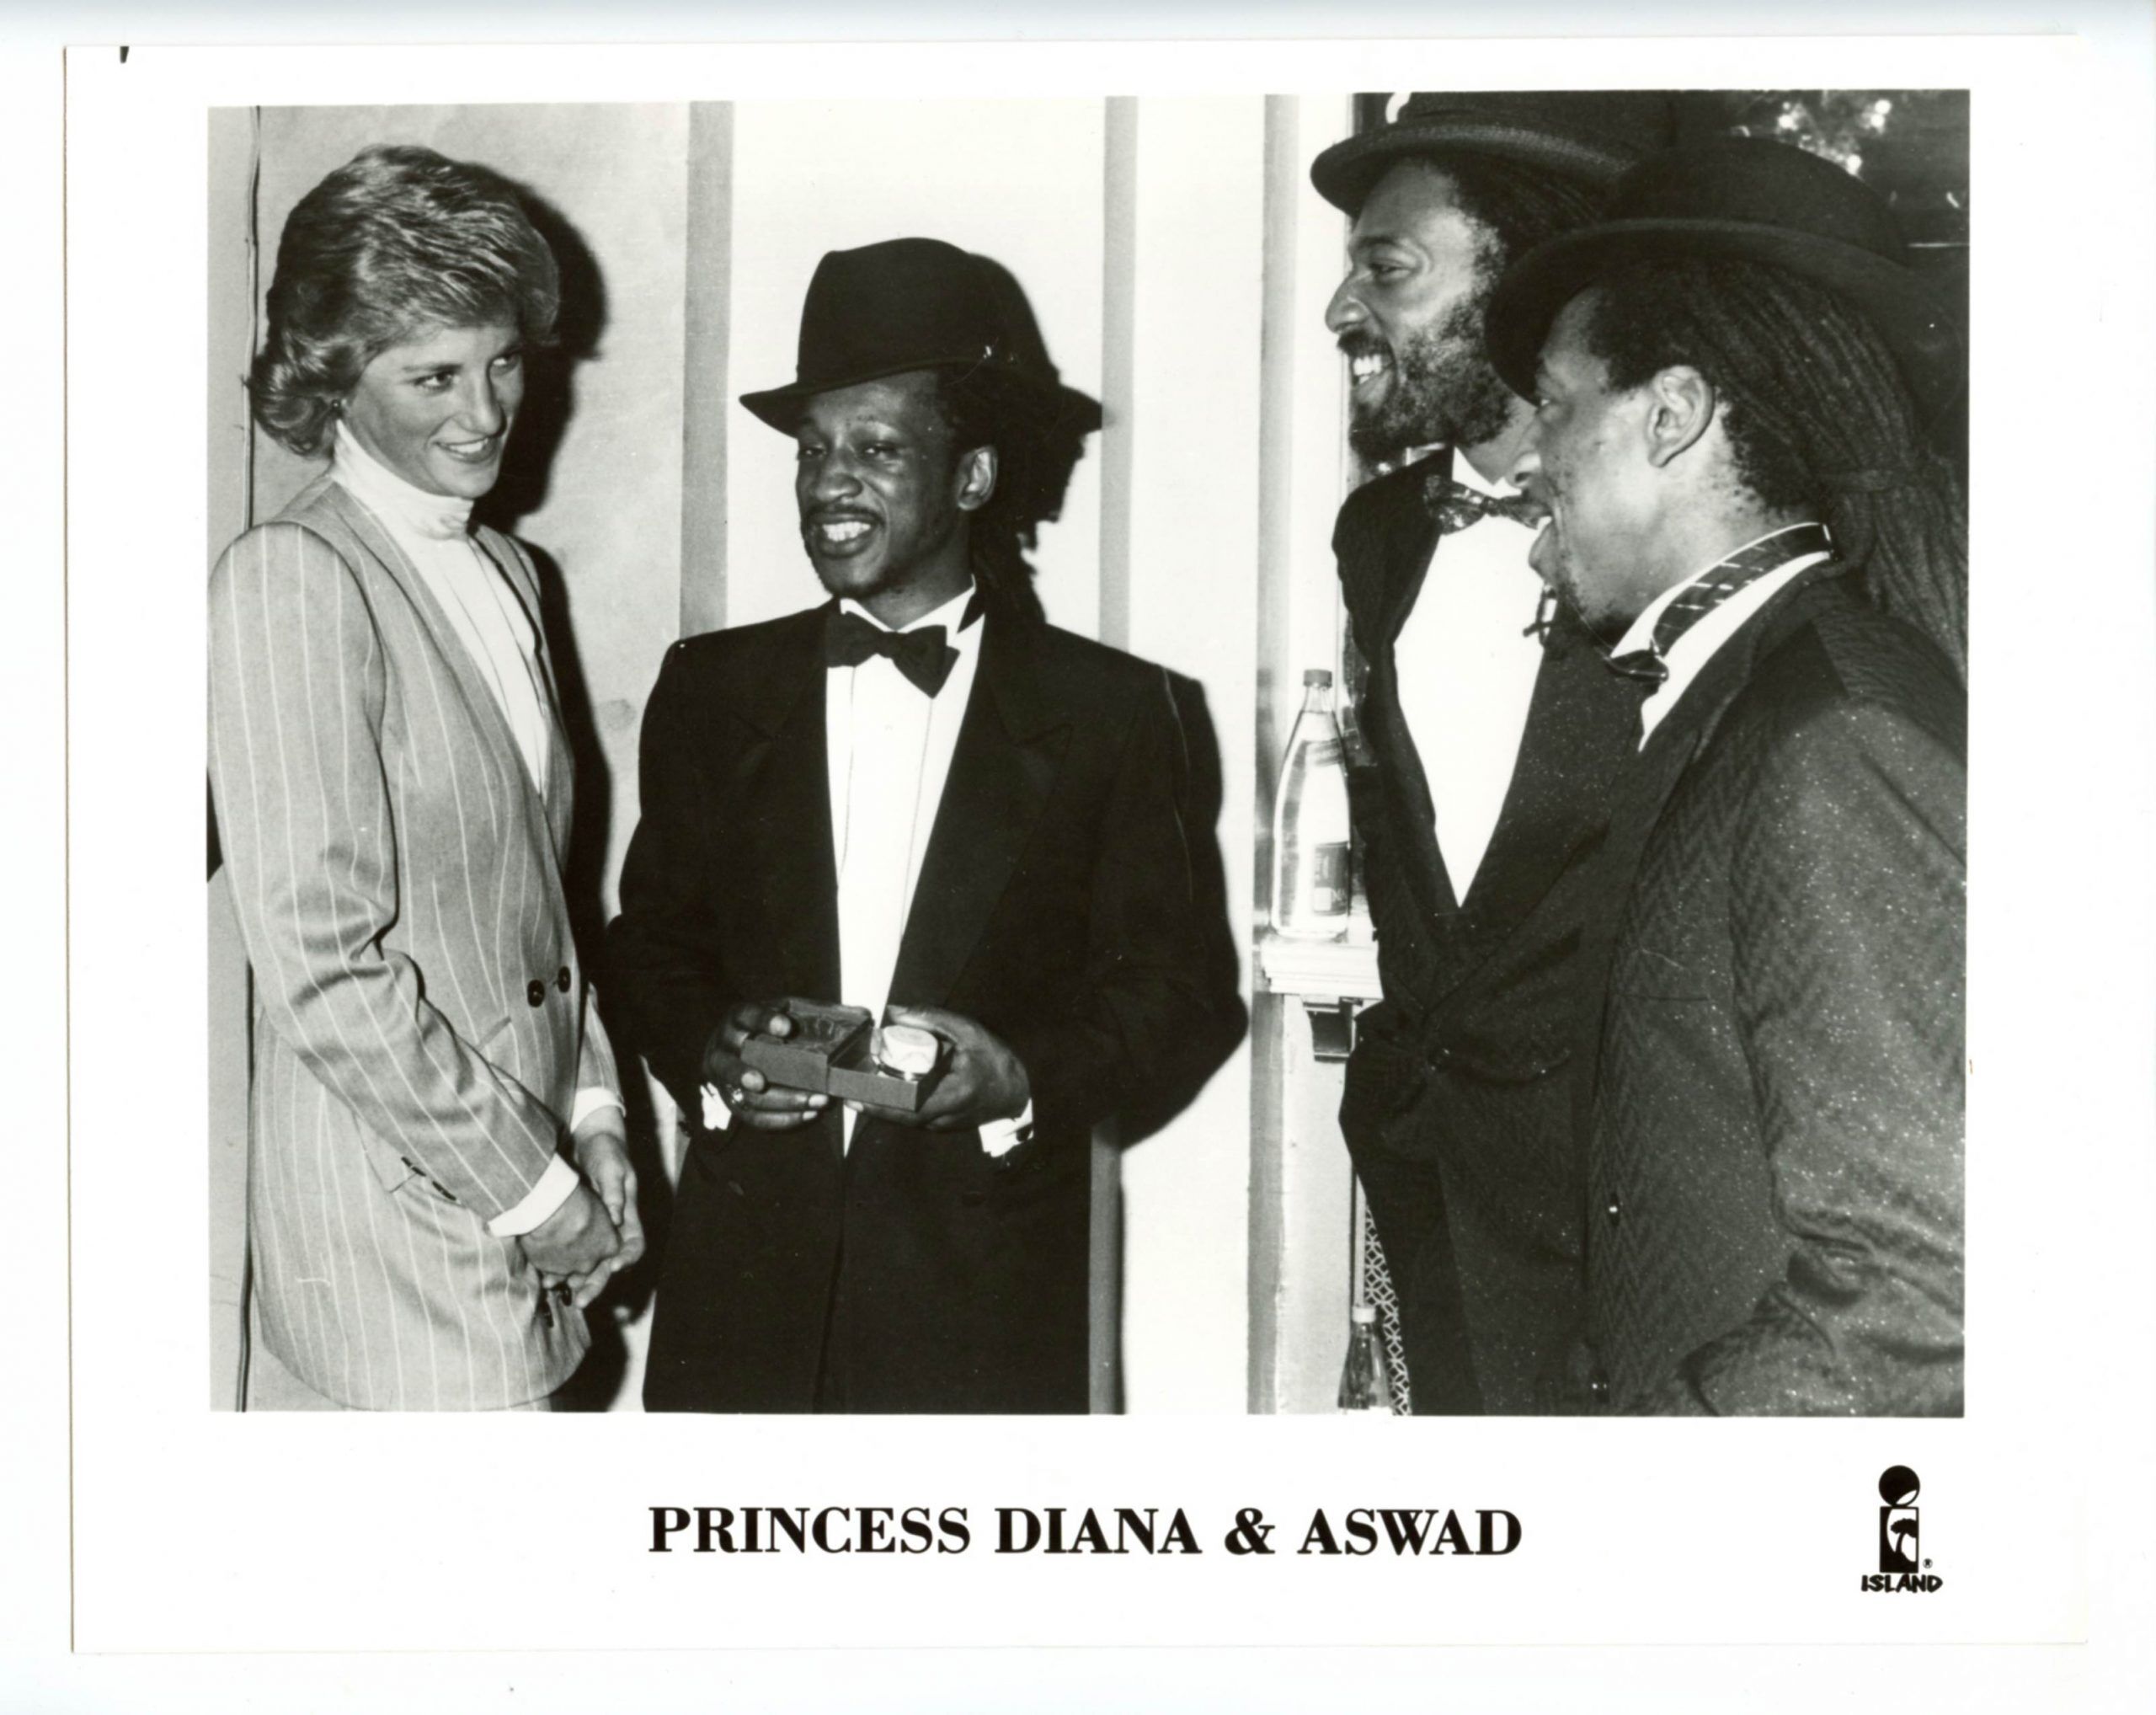 Princess Diana & ASWAD Photo 1980s Island Records